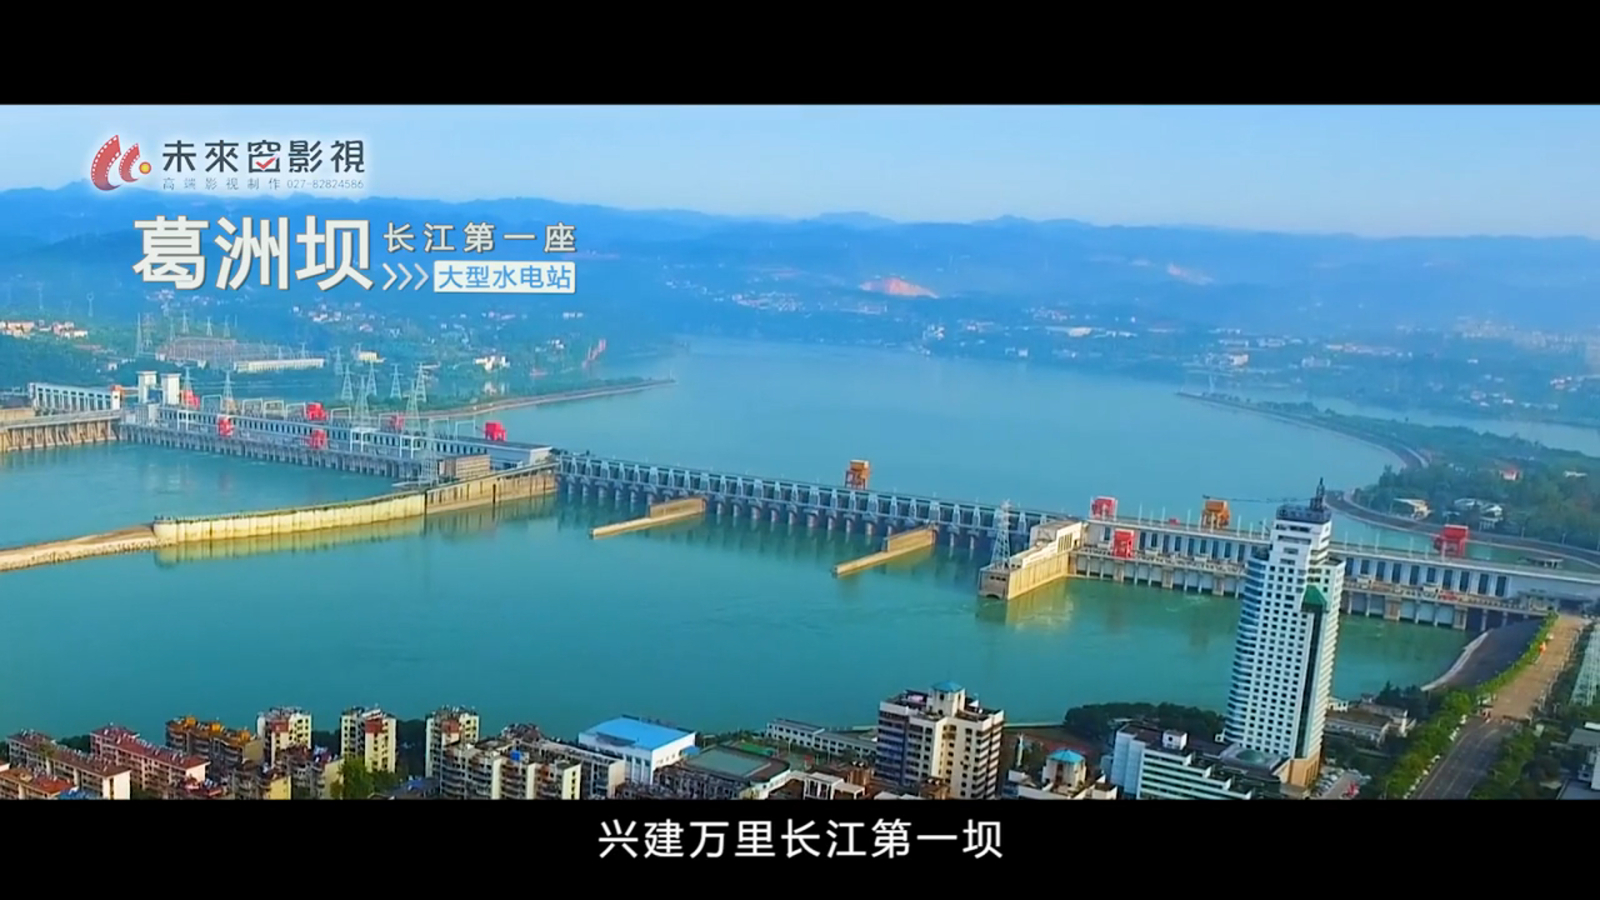  中国葛洲坝集团有限公司是世界500强——中国能源建设集团有限公司的骨干子企业